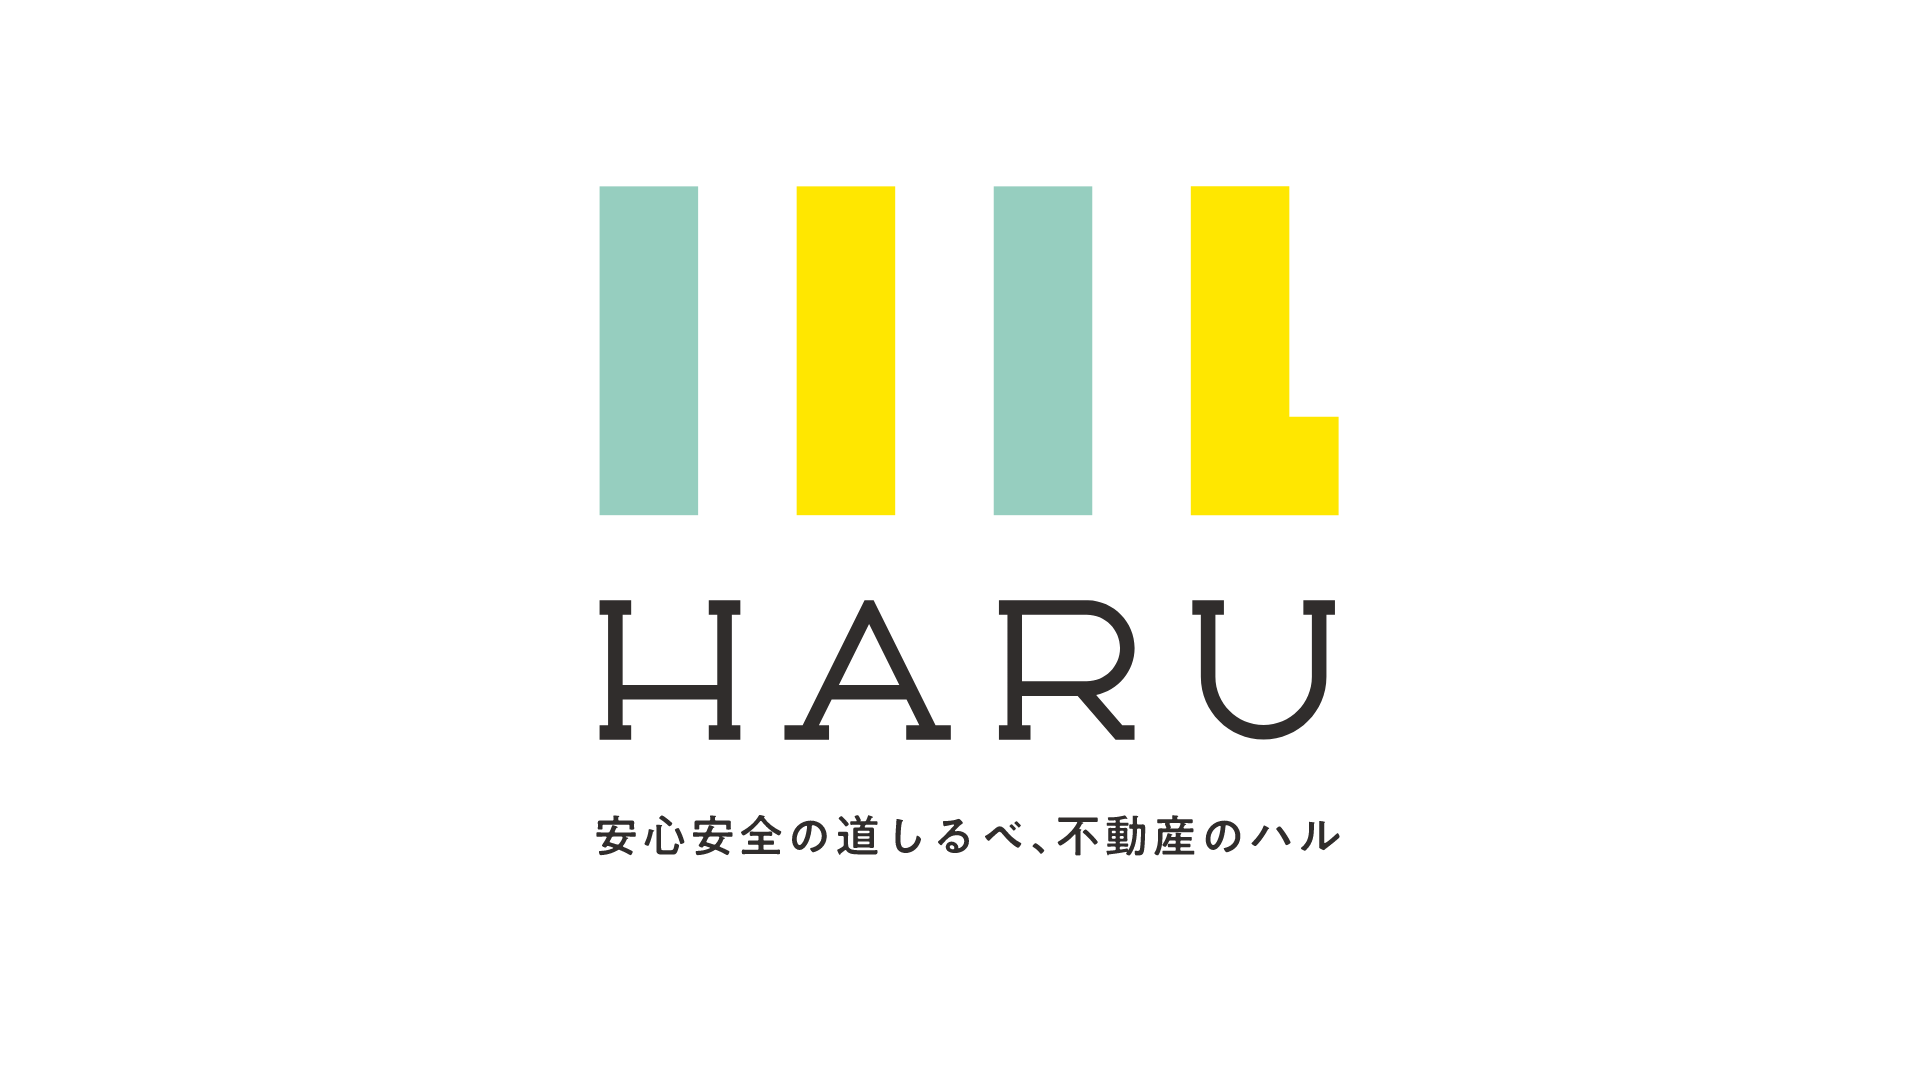 haru